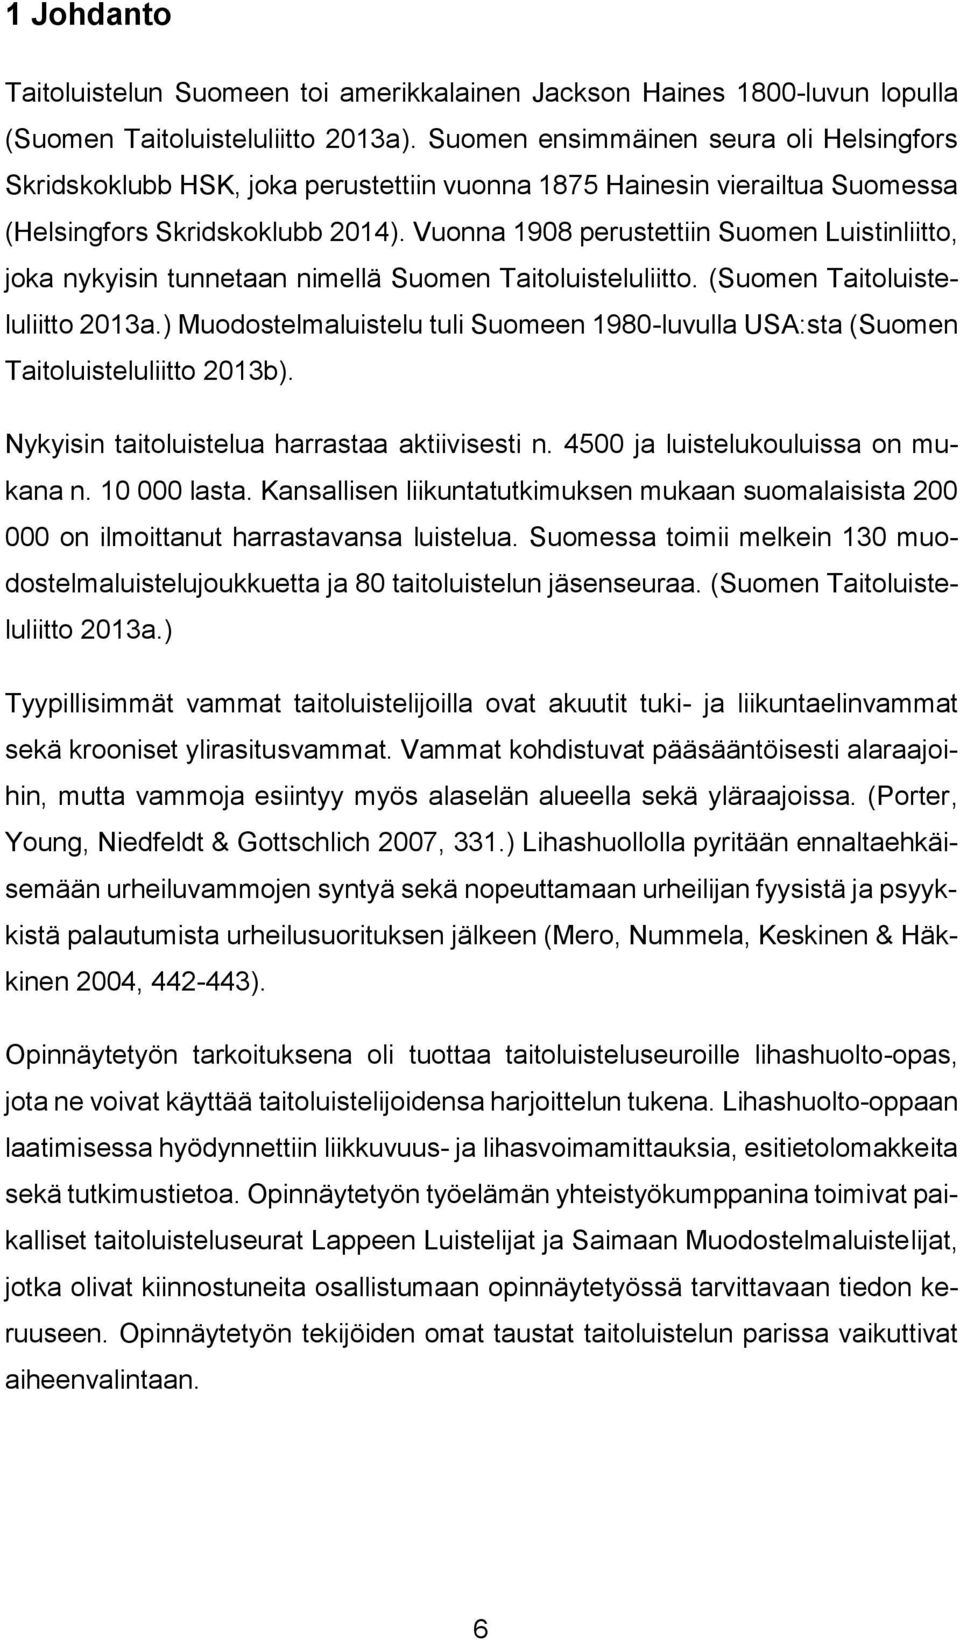 Vuonna 1908 perustettiin Suomen Luistinliitto, joka nykyisin tunnetaan nimellä Suomen Taitoluisteluliitto. (Suomen Taitoluisteluliitto 2013a.